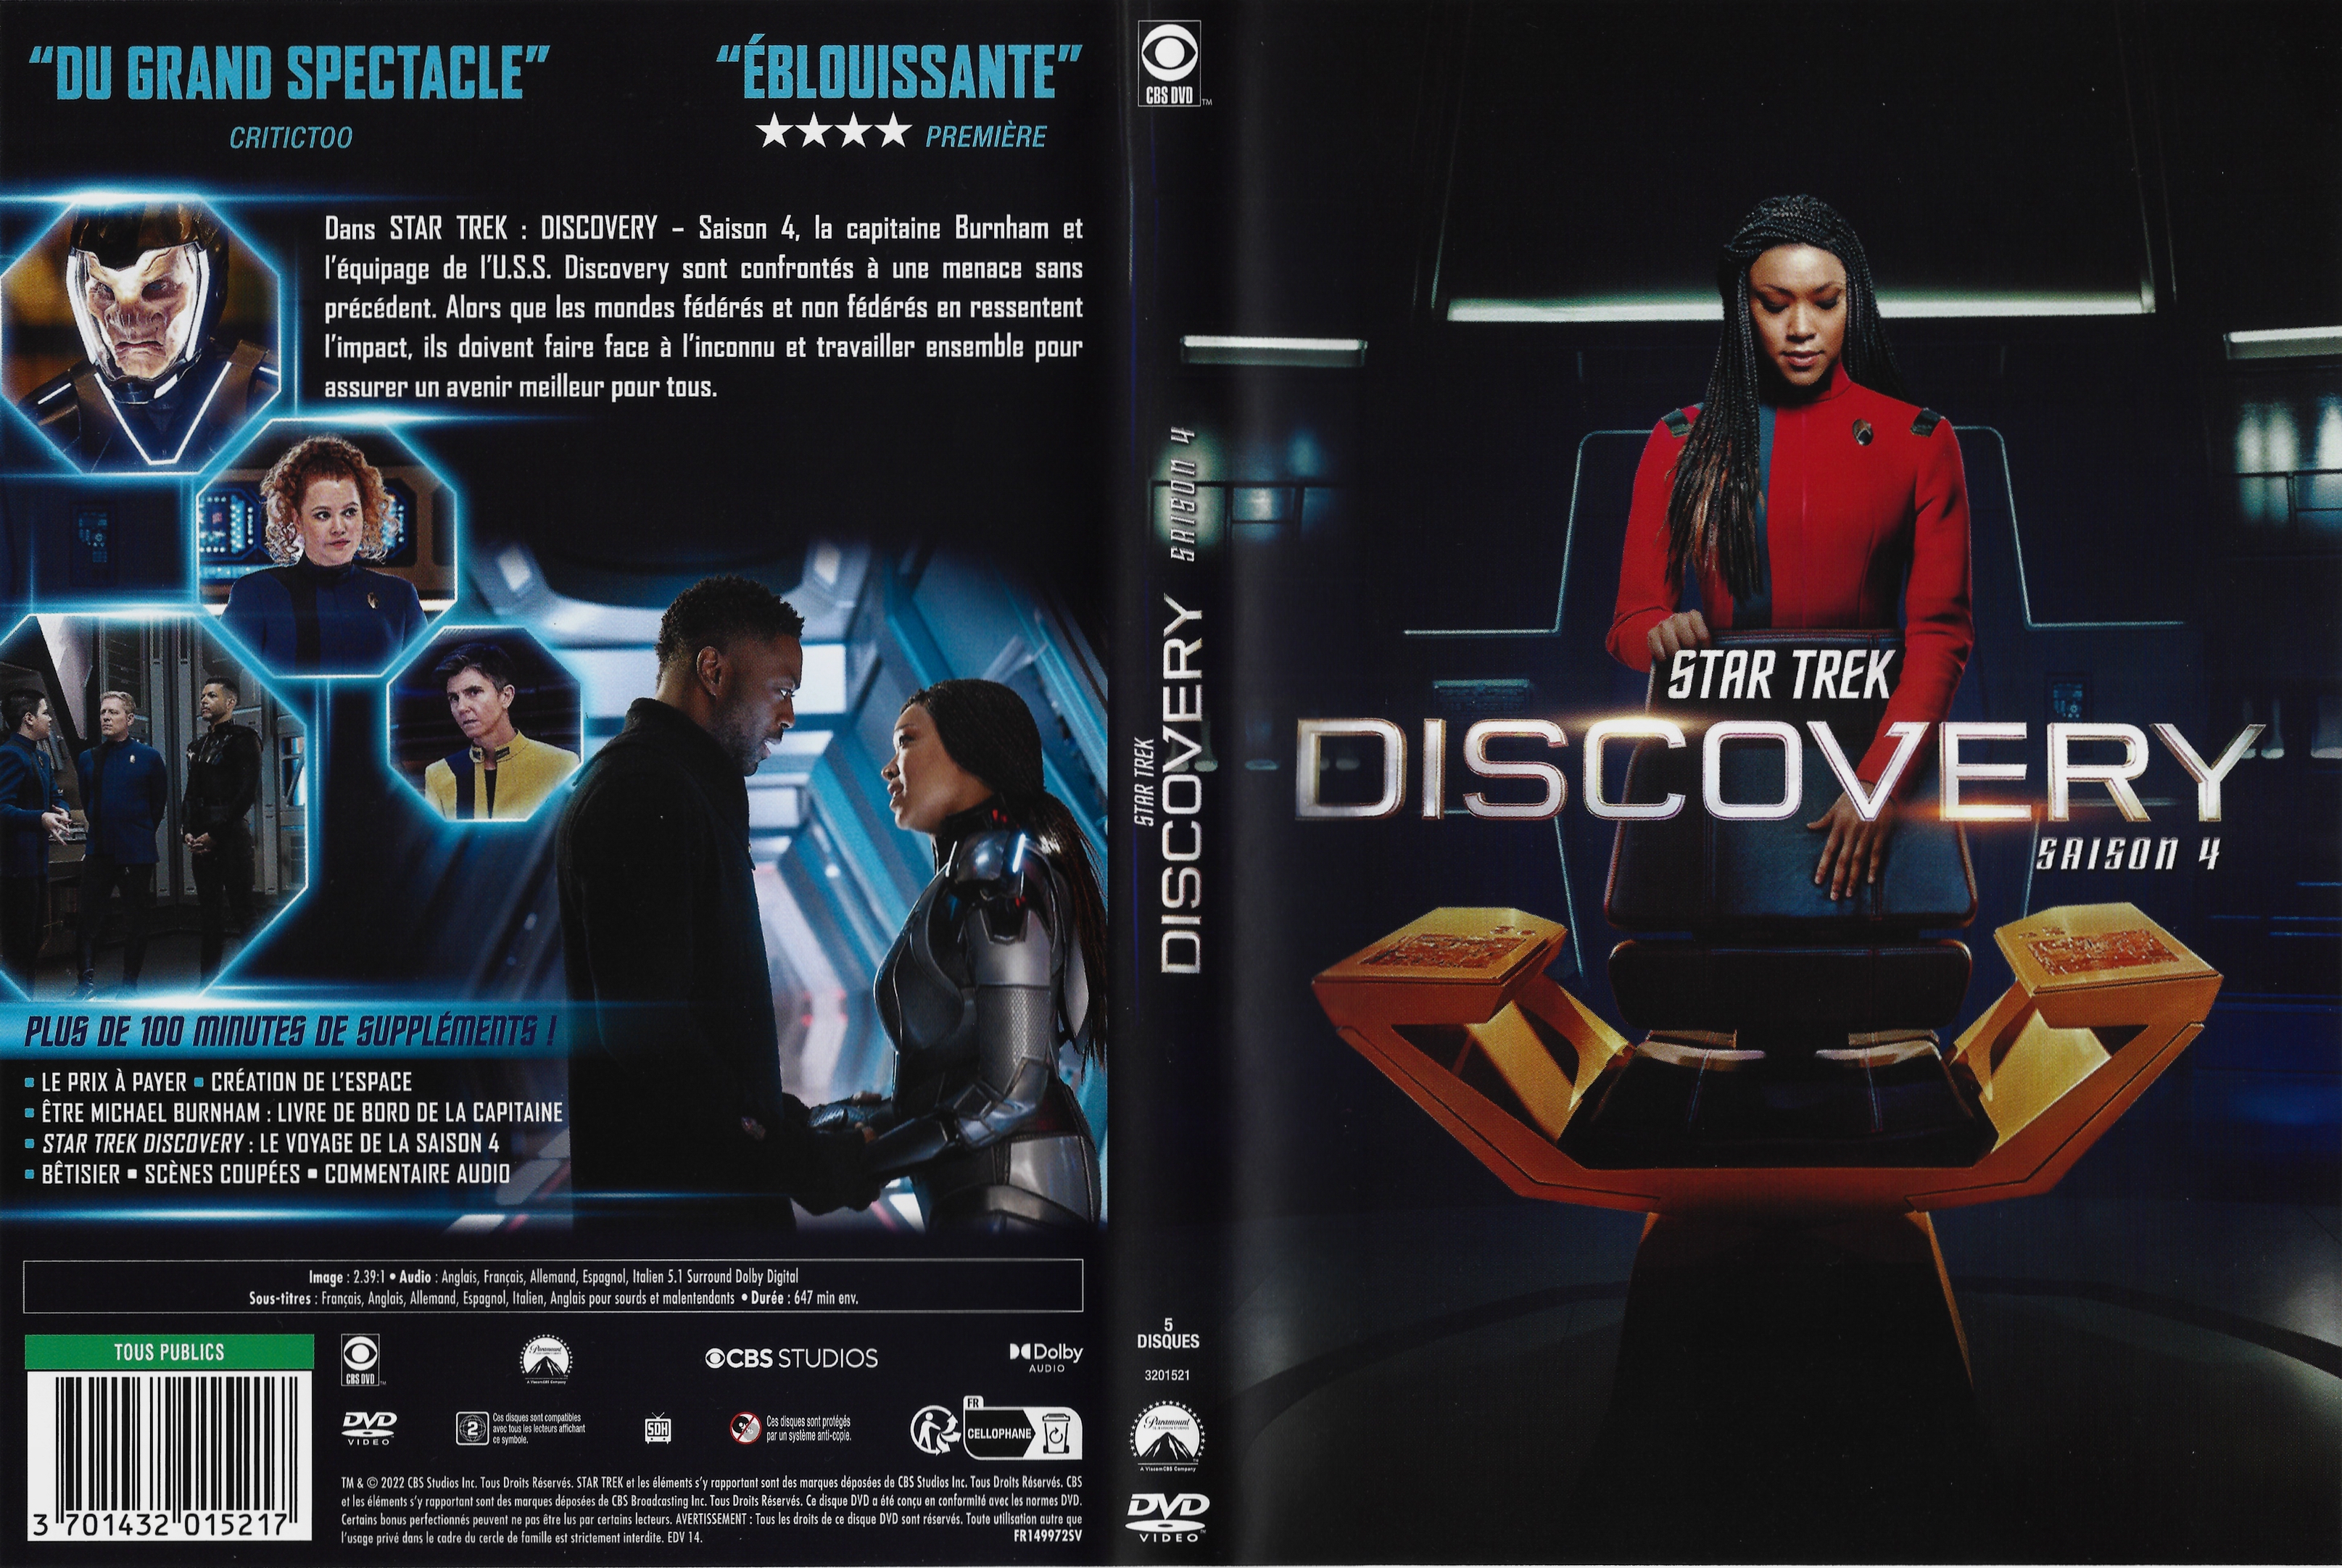 Jaquette DVD Star Trek Discovery saison 4